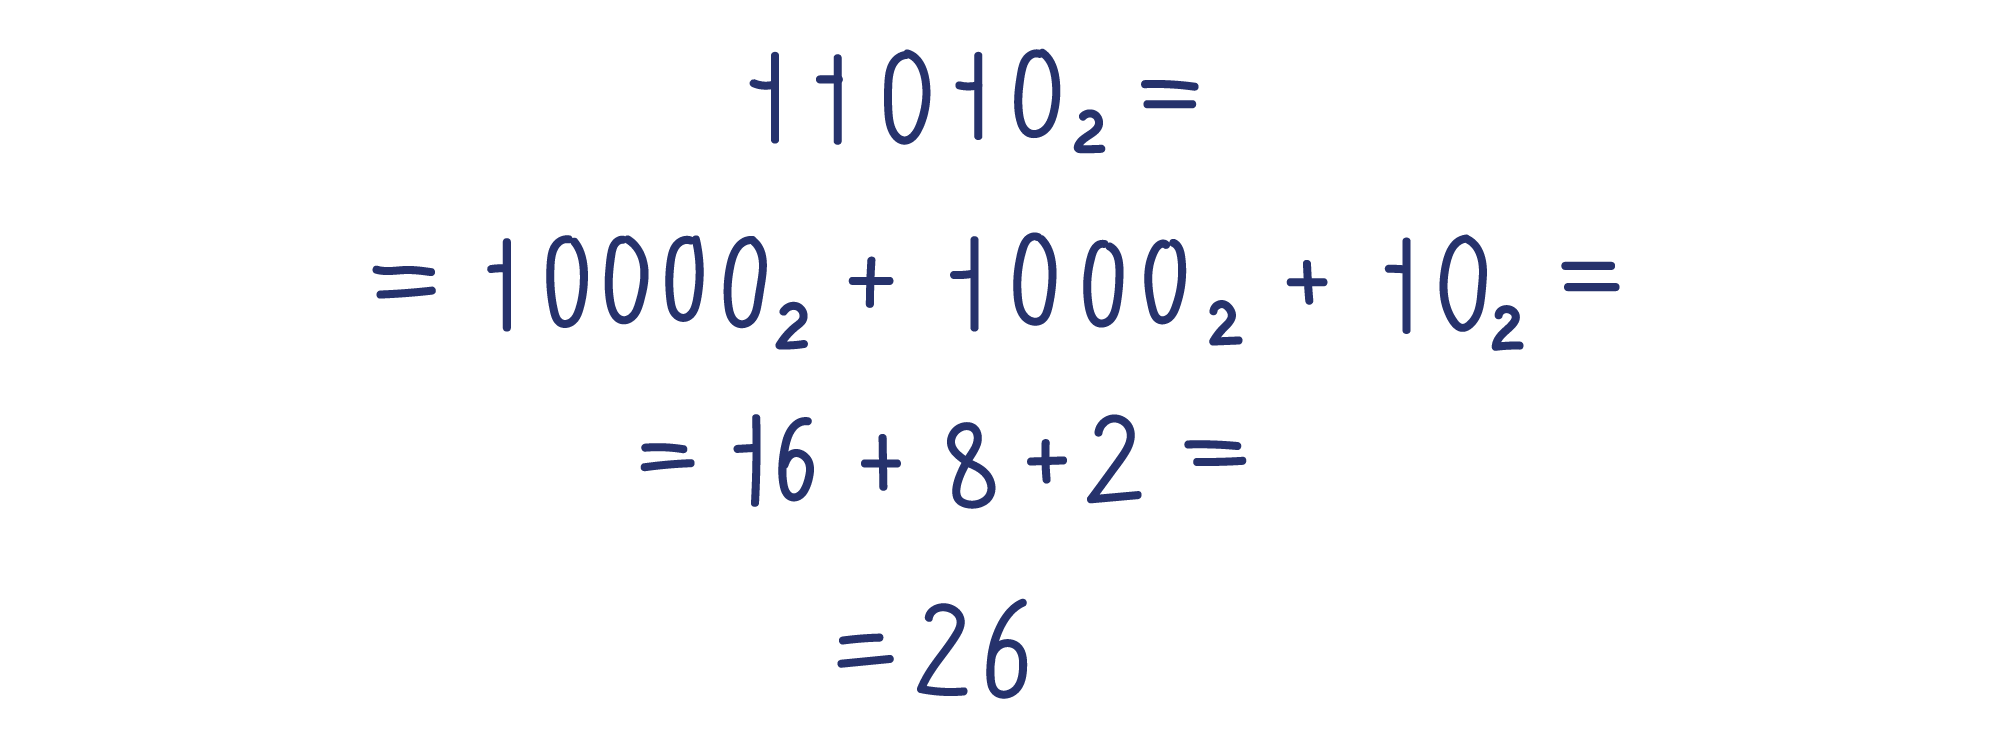 11010₂=10000₂+1000₂+10₂=16+8+2=26